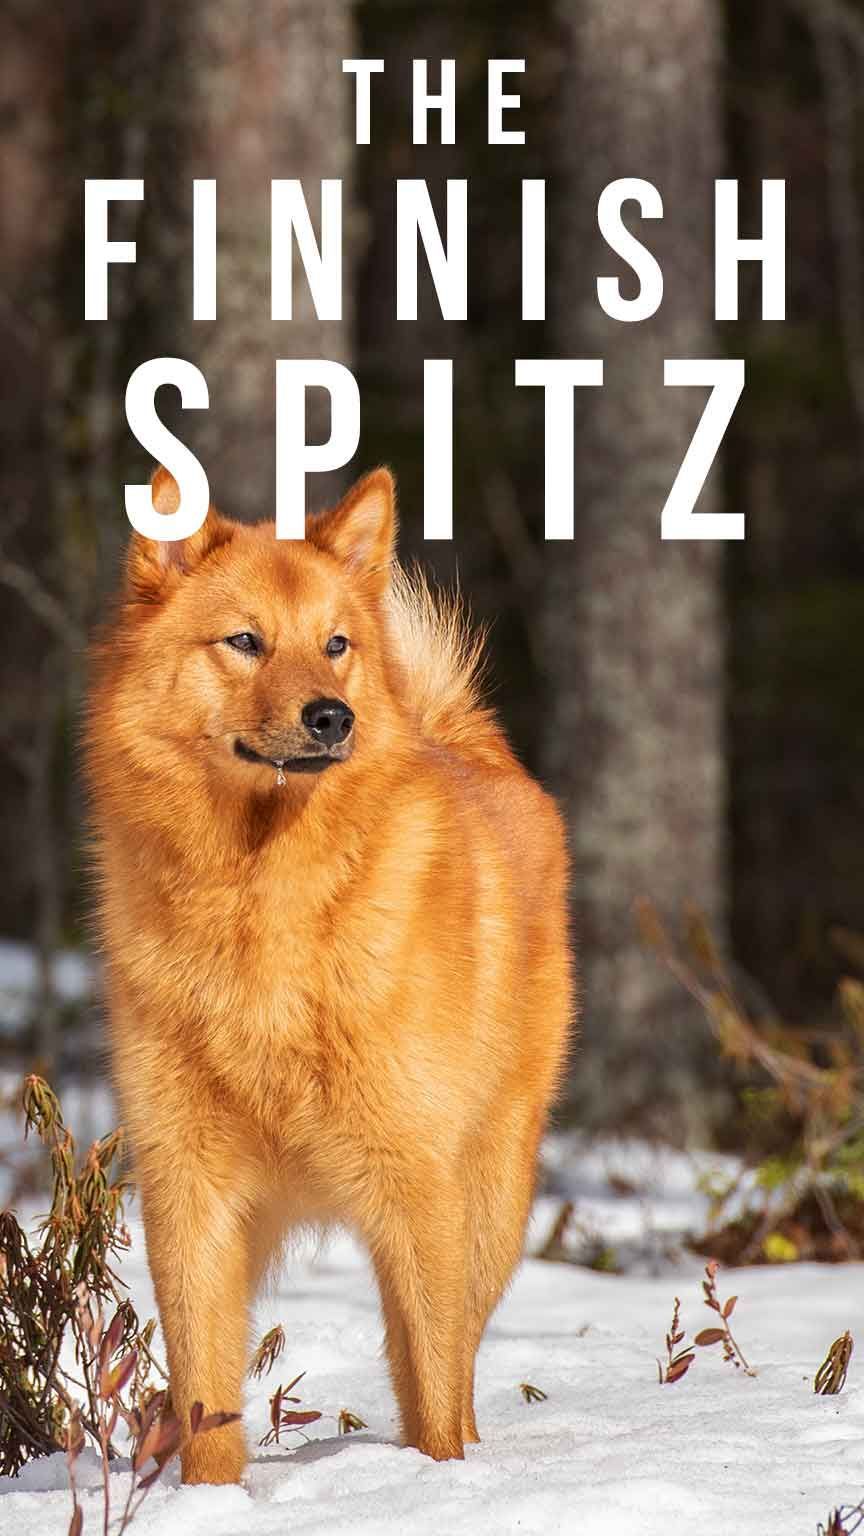 फिनिश स्पिट्ज - एक प्राचीन और पृथक कुत्ते की नस्ल के लिए आपका गाइड